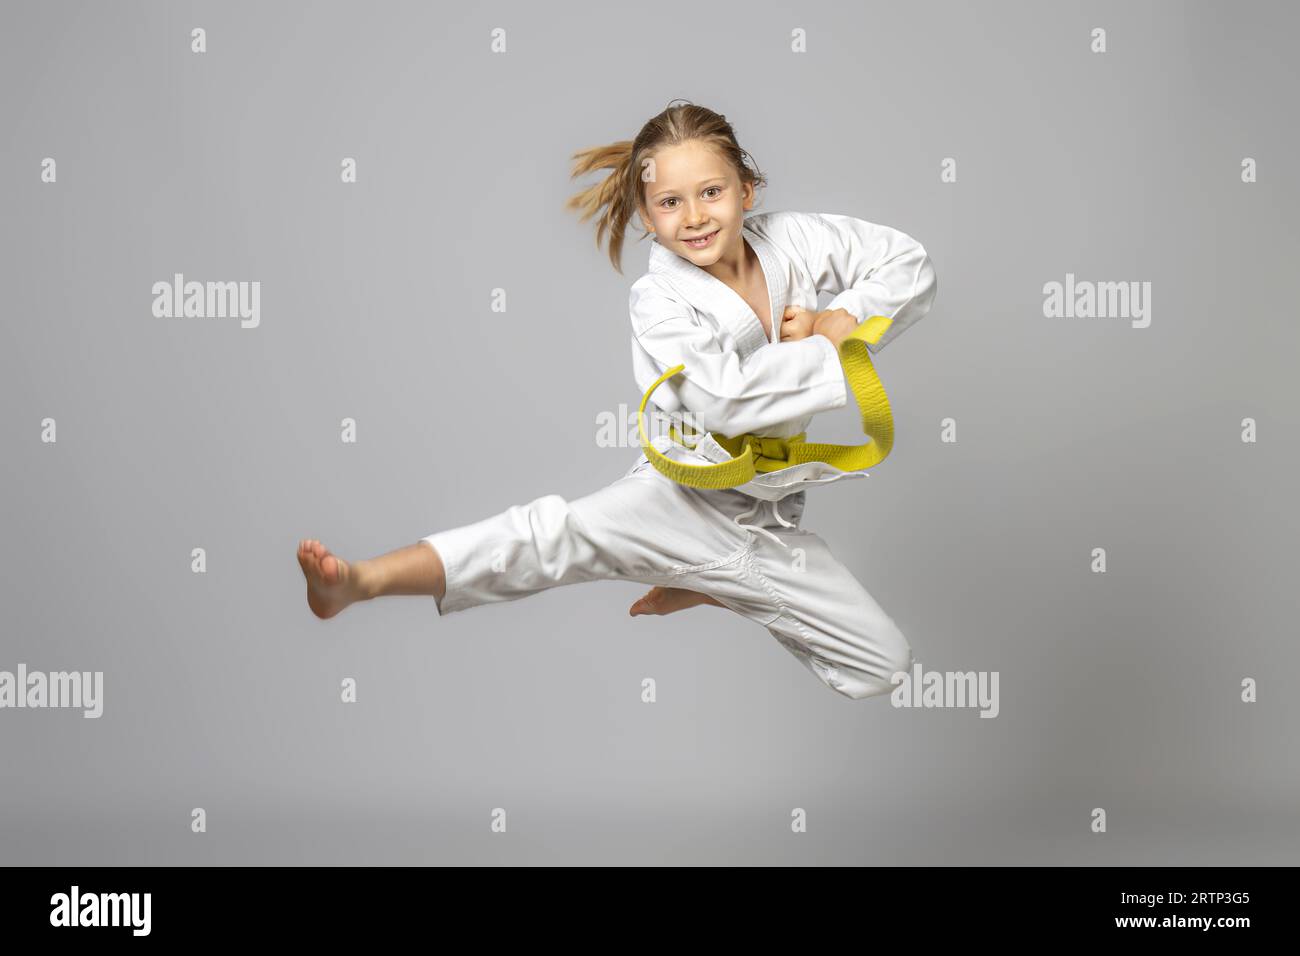 Glückliches Kind, das Kampfkunst übt, führt einen Sprung durch, Studio-Shoot Stockfoto